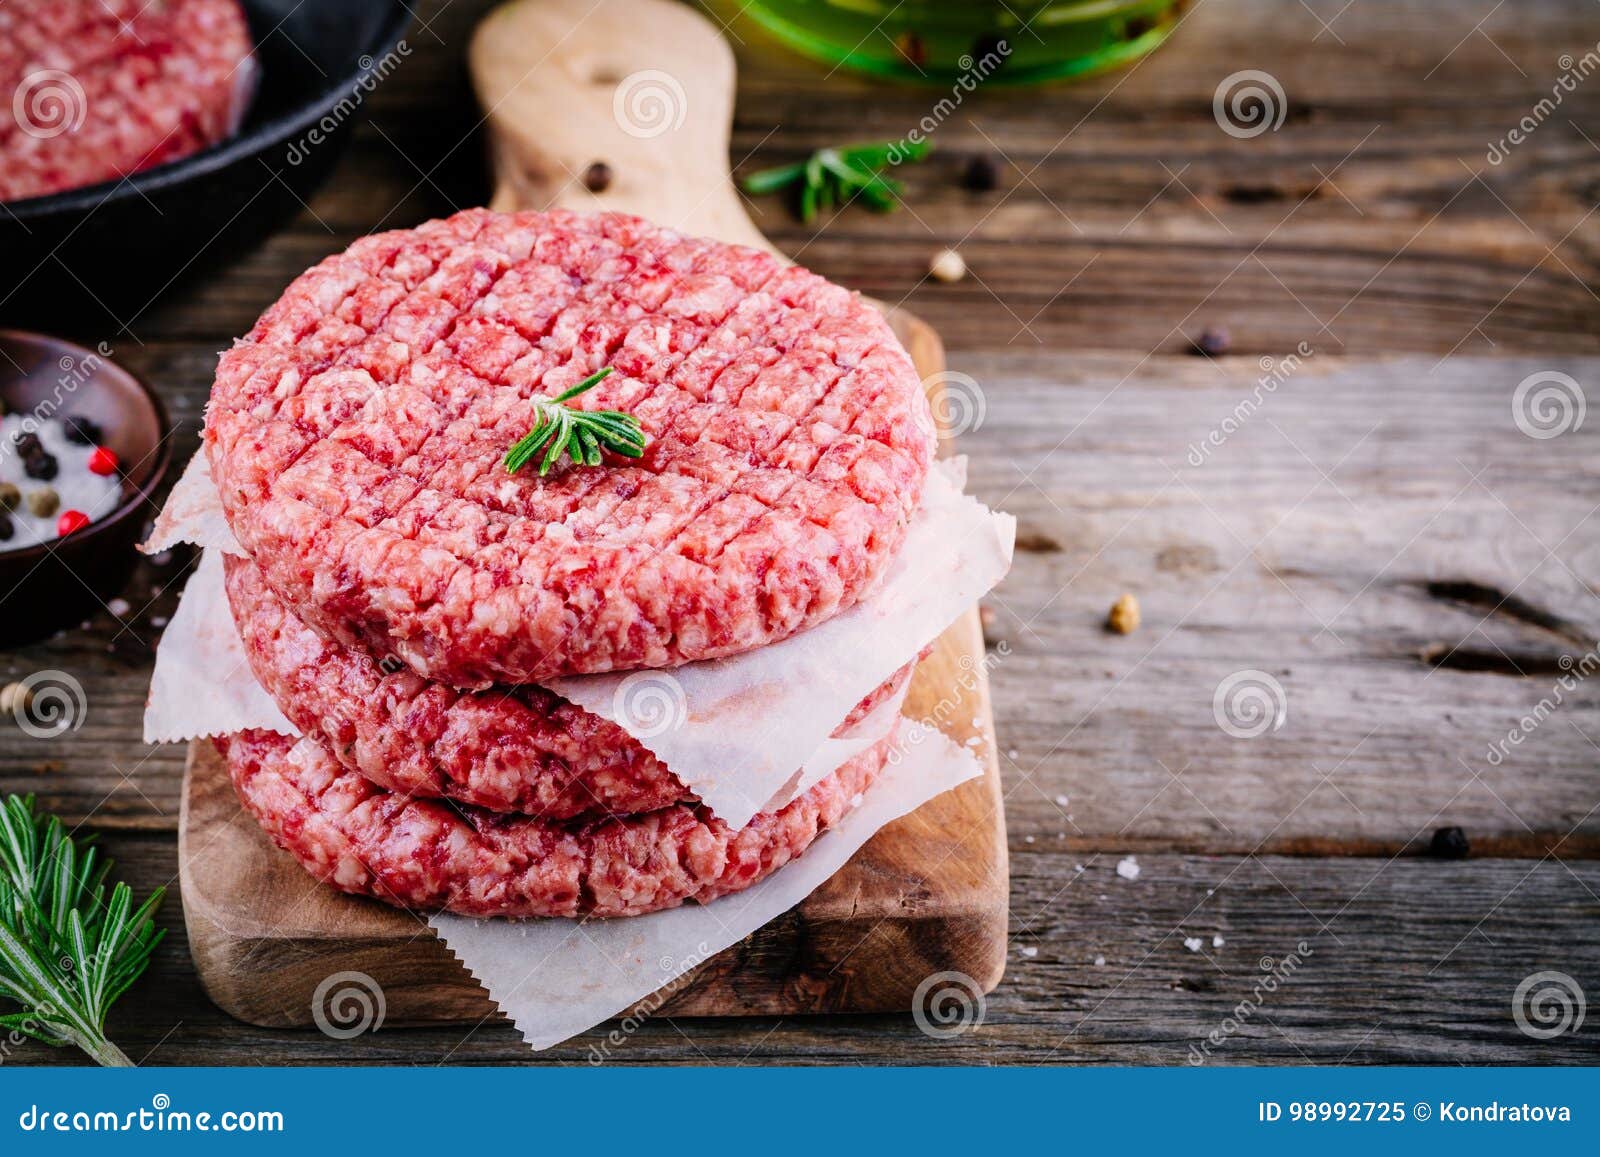 raw ground beef meat burger steak cutlets